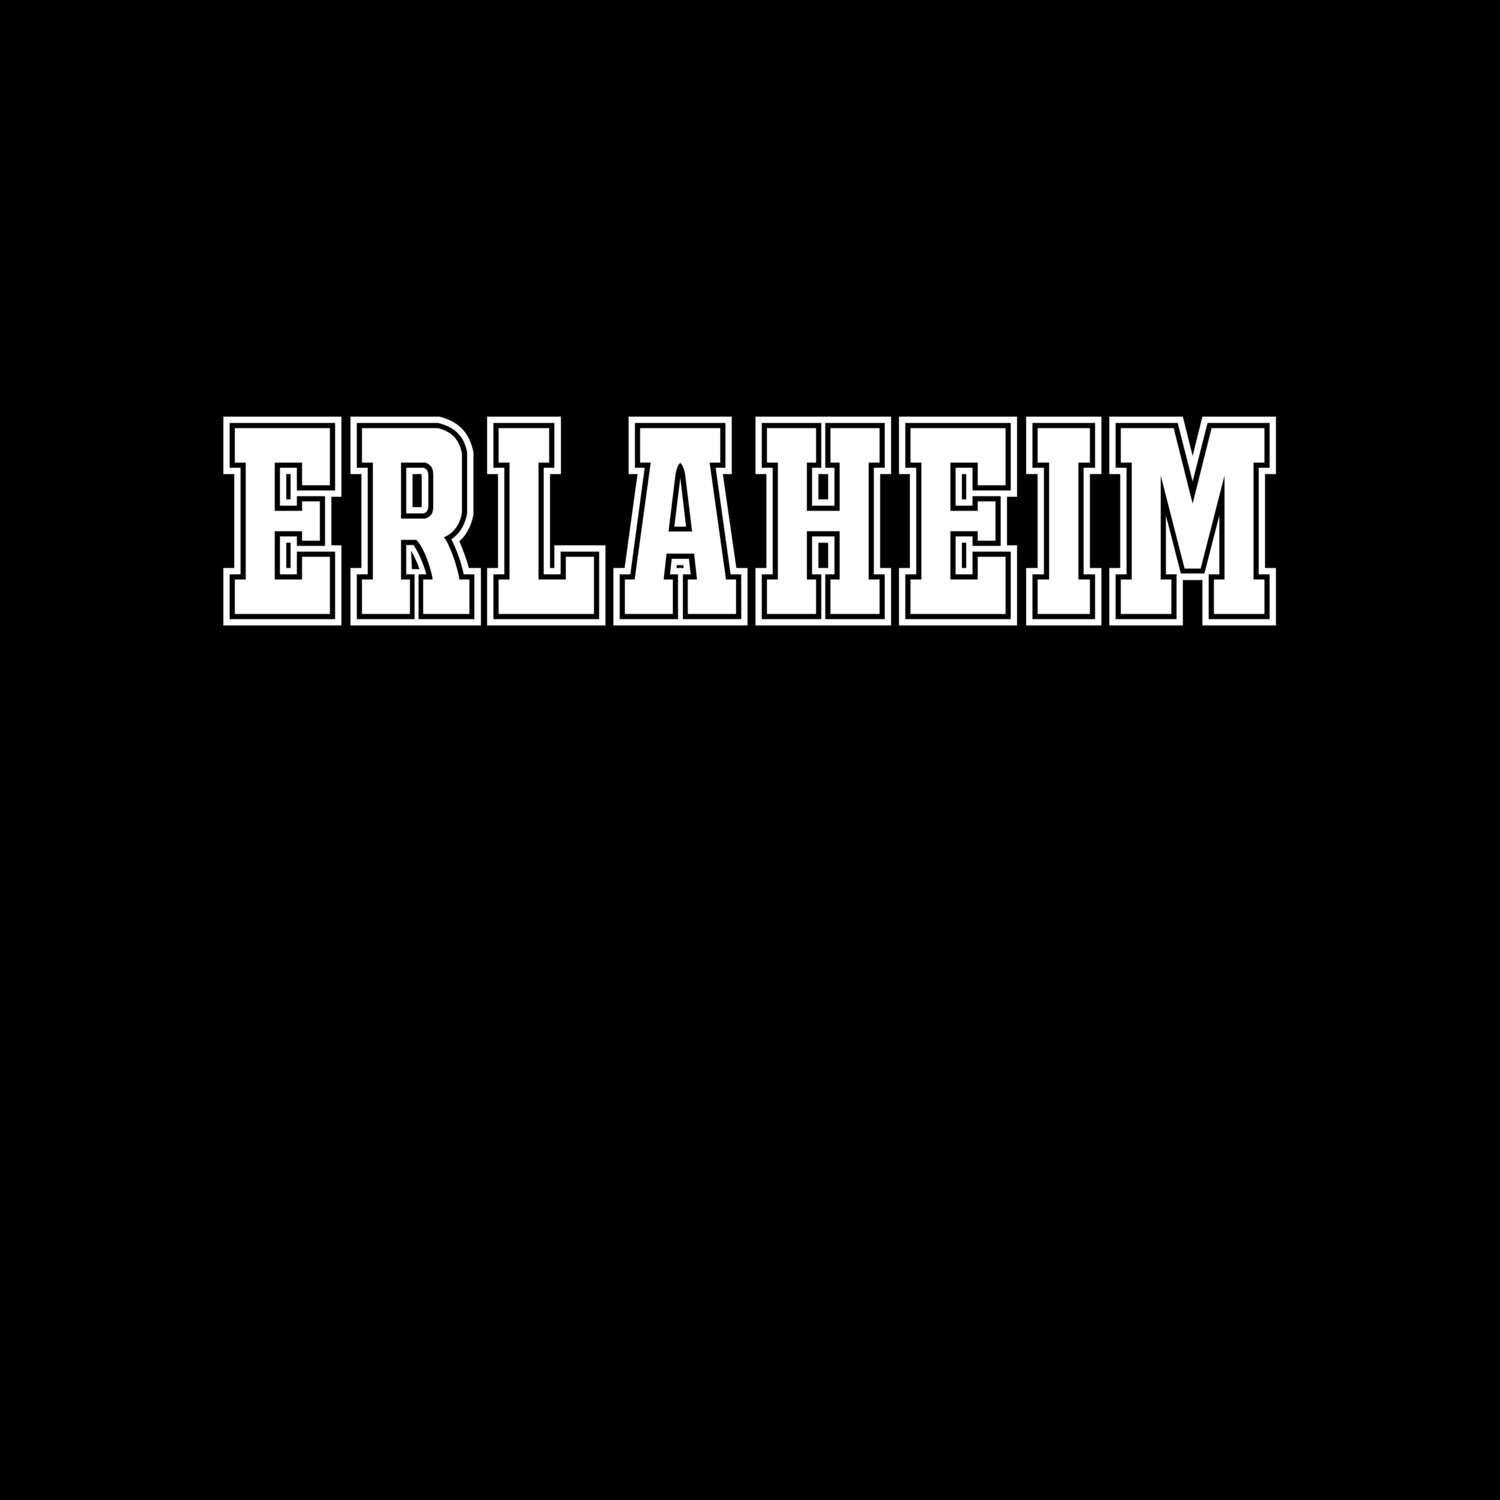 Erlaheim T-Shirt »Classic«